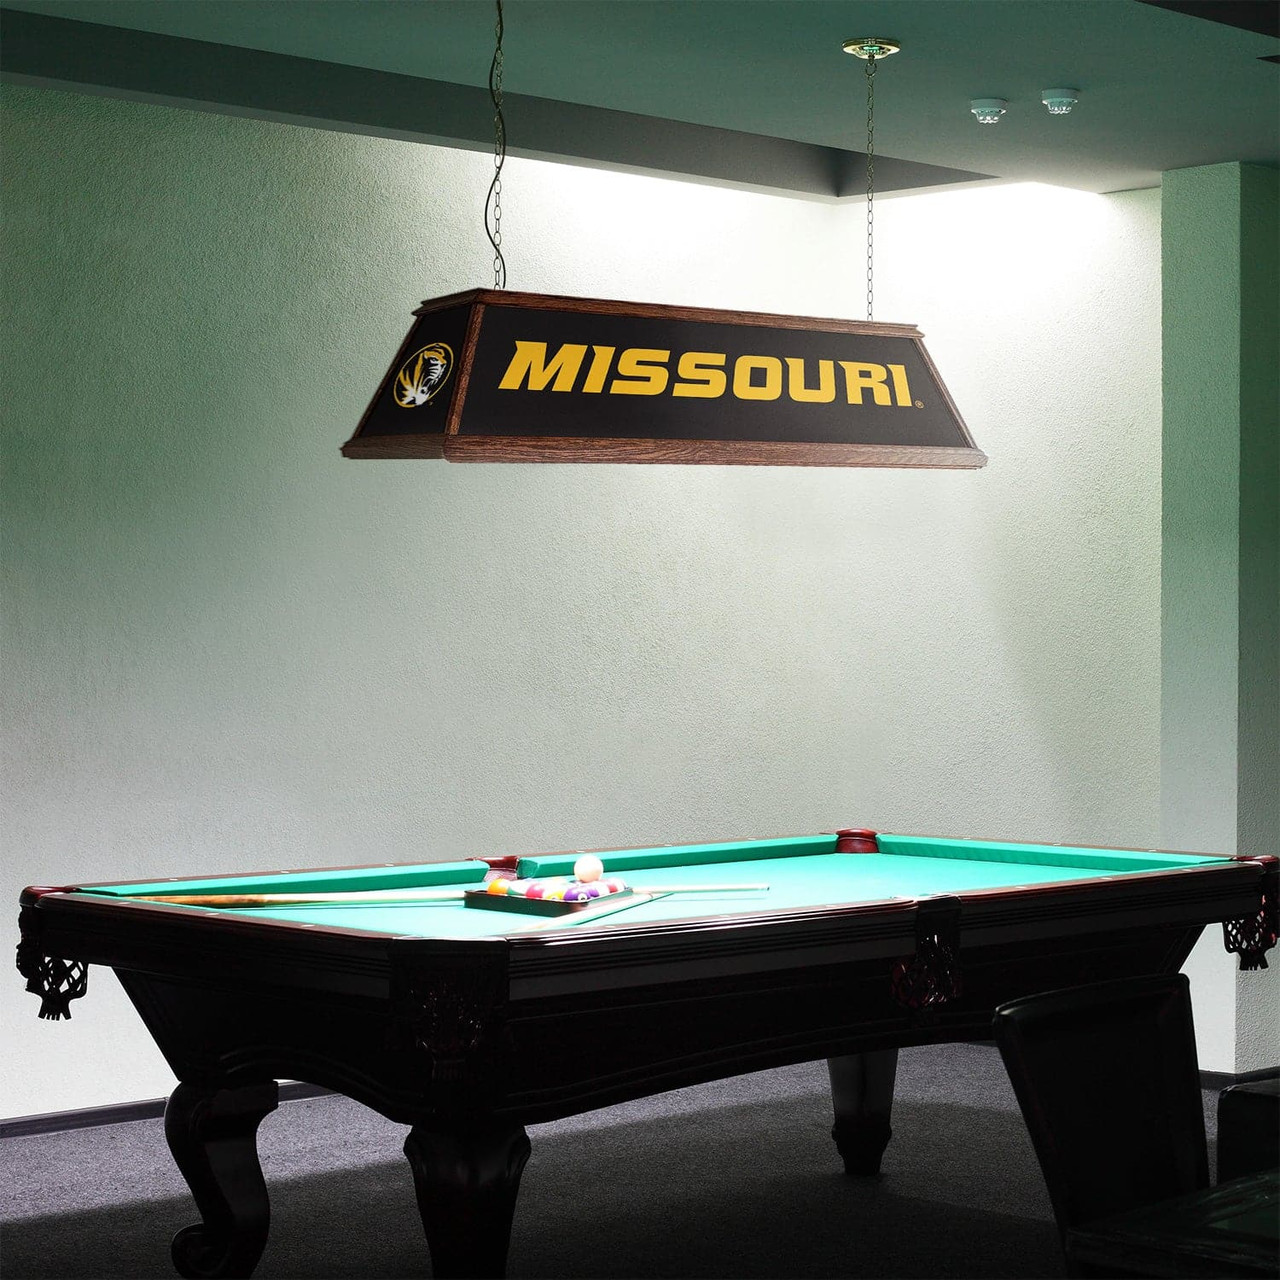 Missouri, Tigers, Premium, Wood, Billiard, Pool, Table, Light, Lamp, NCMISU-330-01A, NCMISU-330-01B, The Fan-Brand, 687747754689